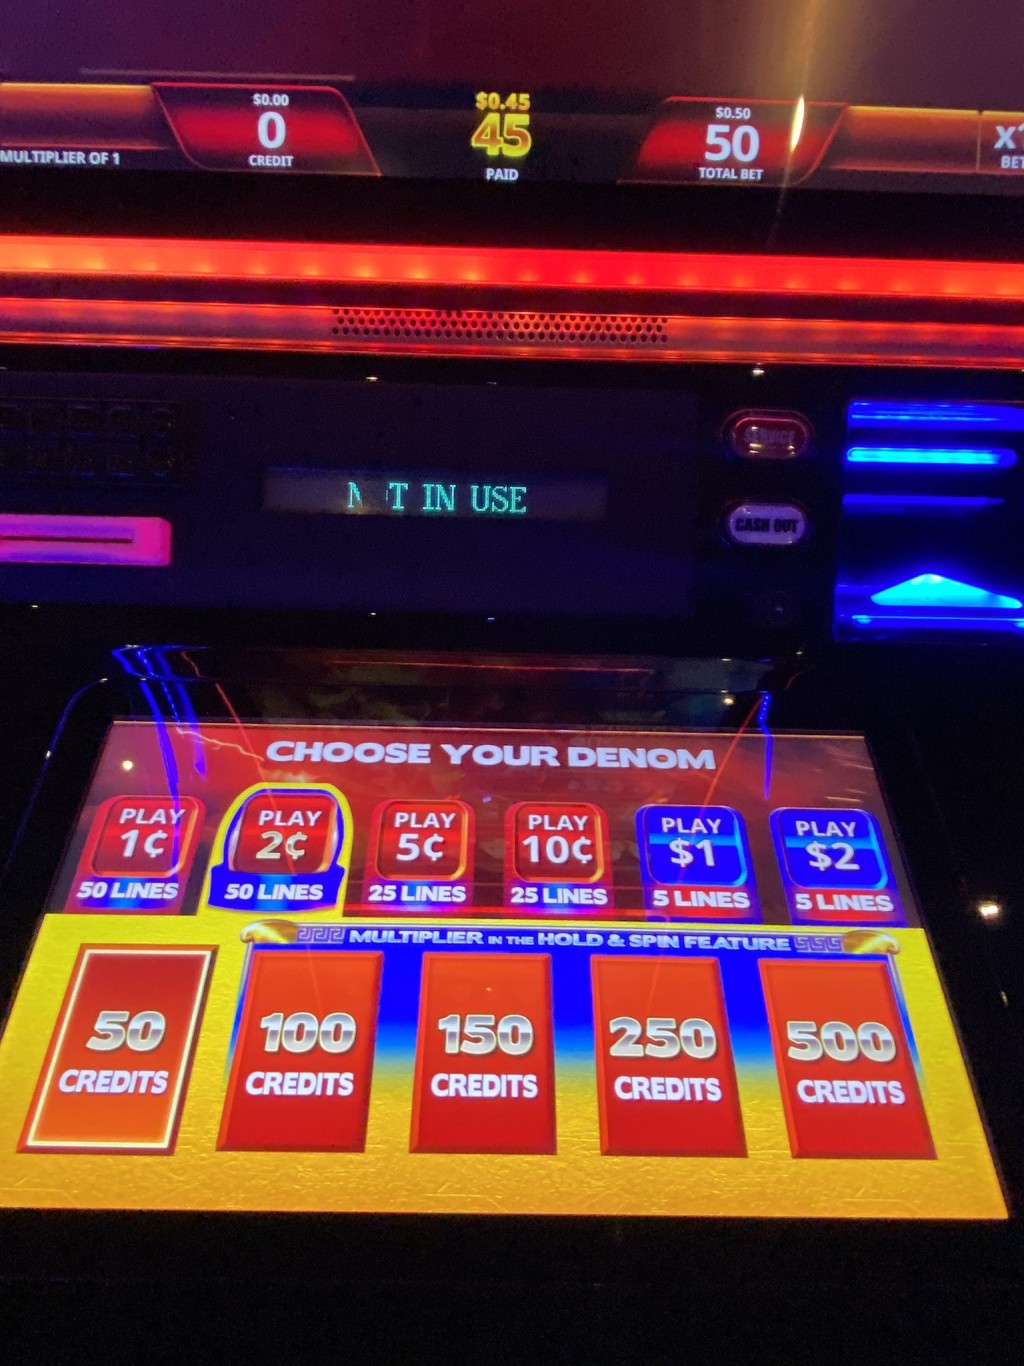 賭場遊戲機顯示暫停使用。 X